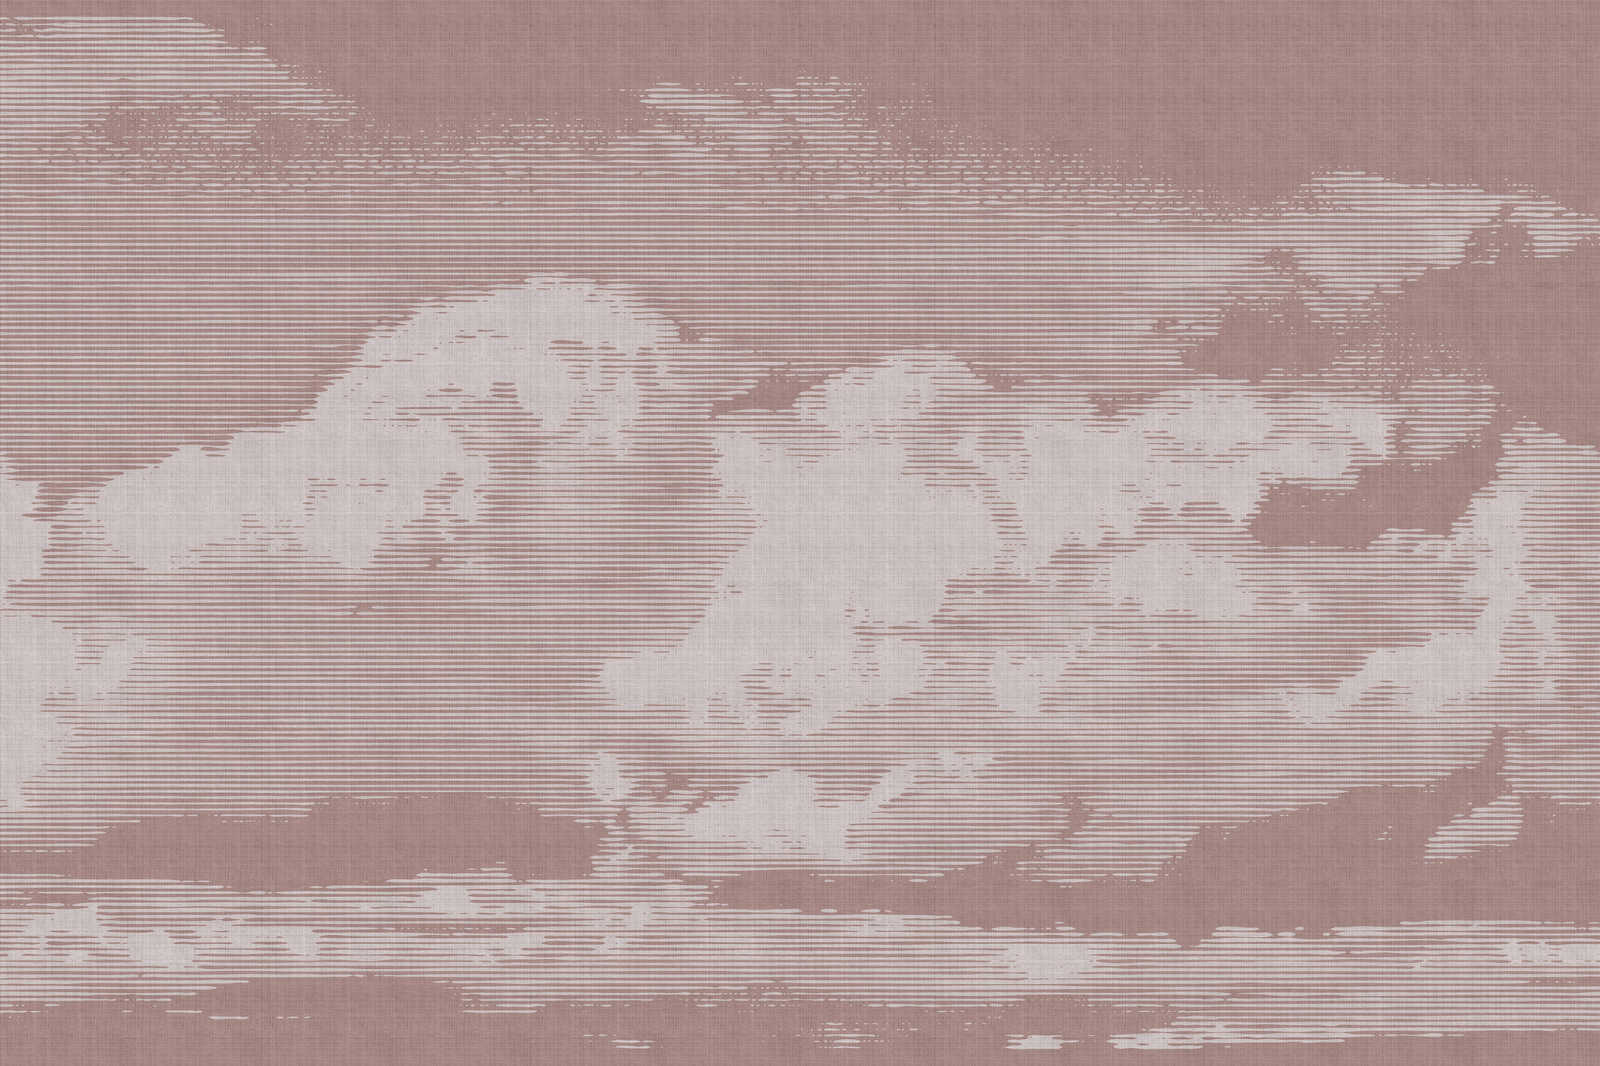             Clouds 3 - Hemelse canvasfoto met wolkenmotief - Natuurlijke linnenlook - 0,90 m x 0,60 m
        